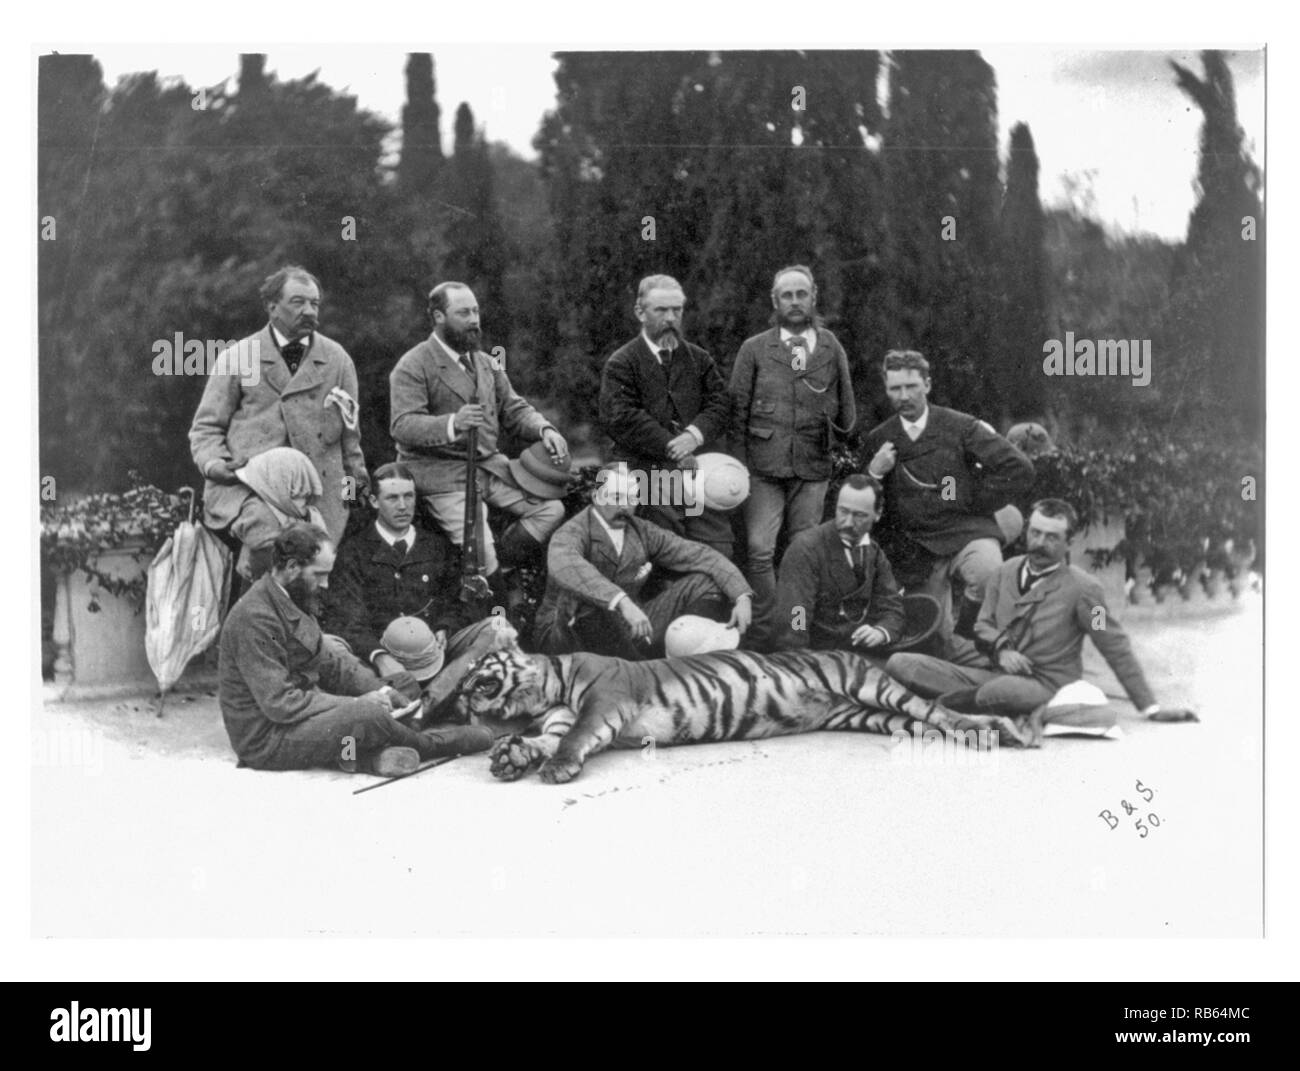 Photographie du Prince de Galles, futur roi Édouard VII (de Grande-Bretagne), holding rifle, posant avec les membres de son parti et d'un tigre, durant son tour de l'Inde. Datée 1875 Banque D'Images